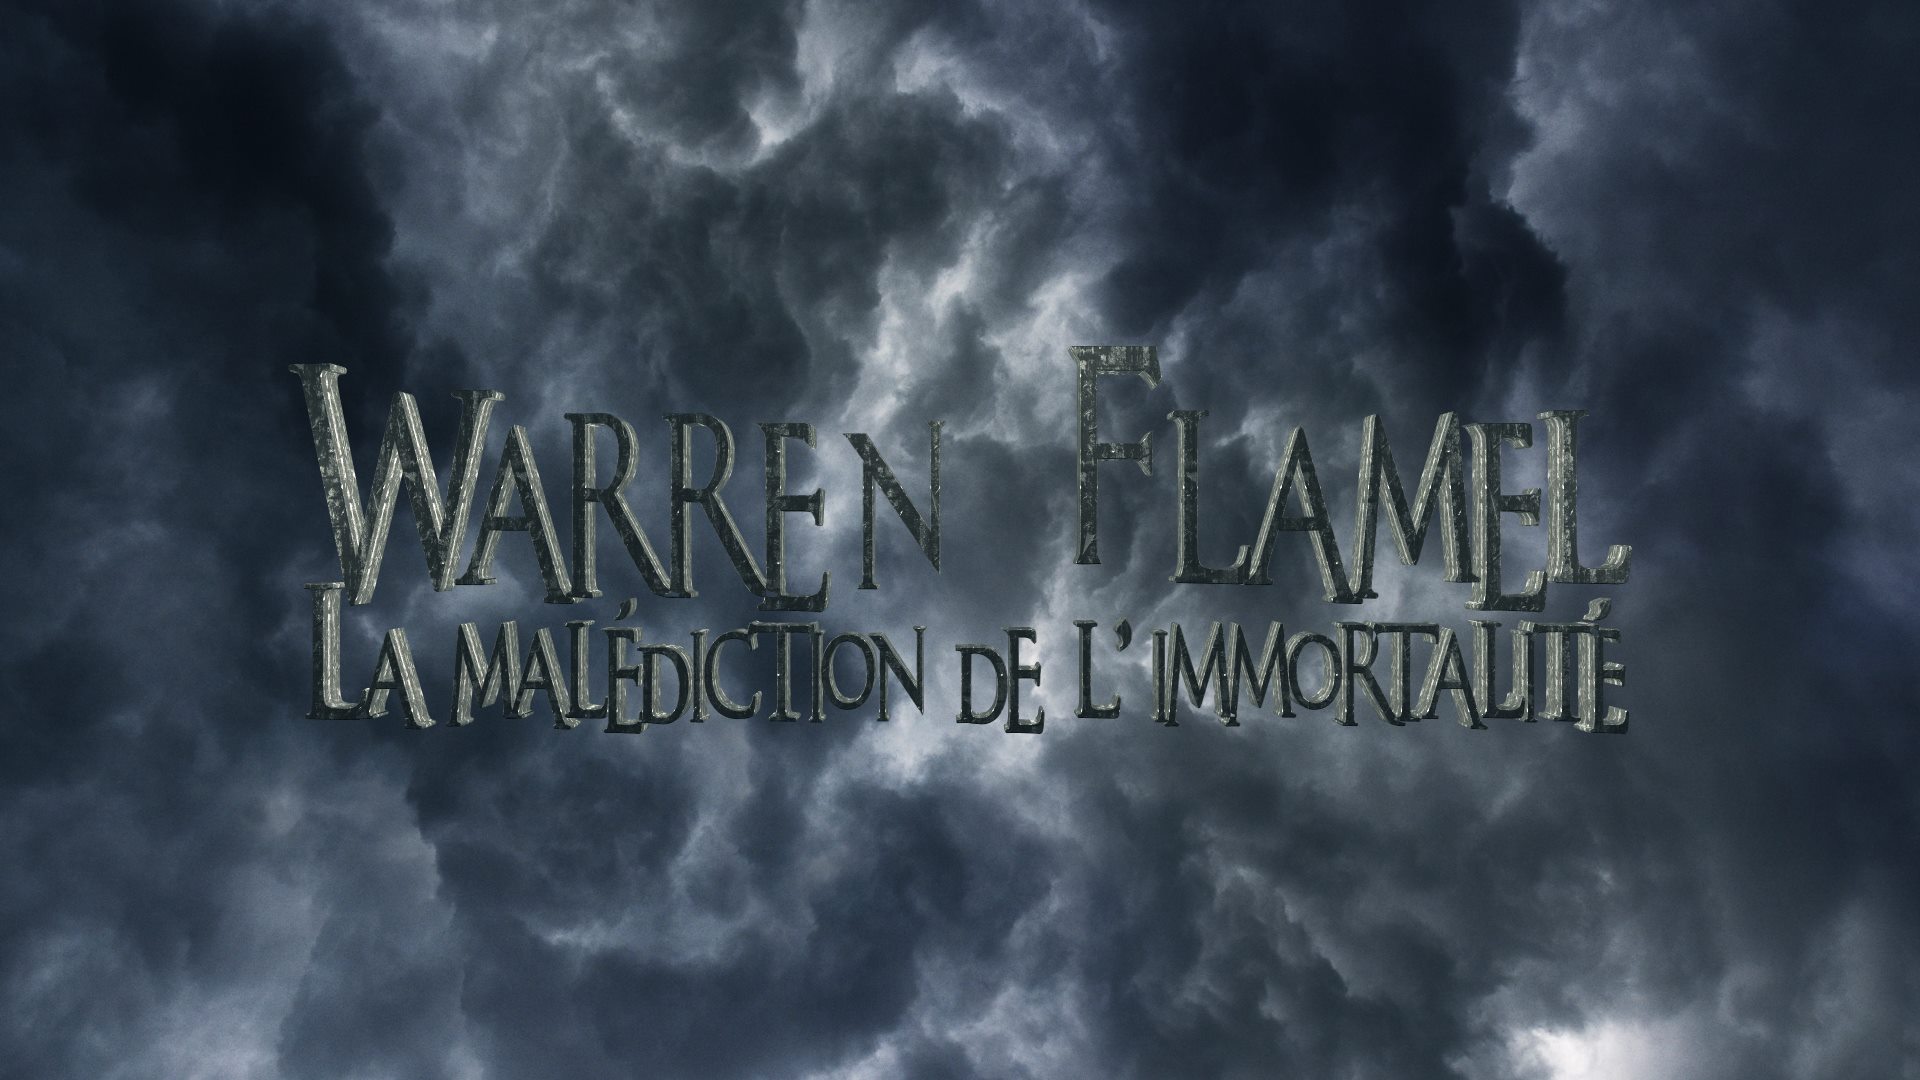 Le titre de la websérie Warren Flamel apparaît dans un ciel très nuageux, qui laisse à penser qu'un orage se rapproche dangereusement.